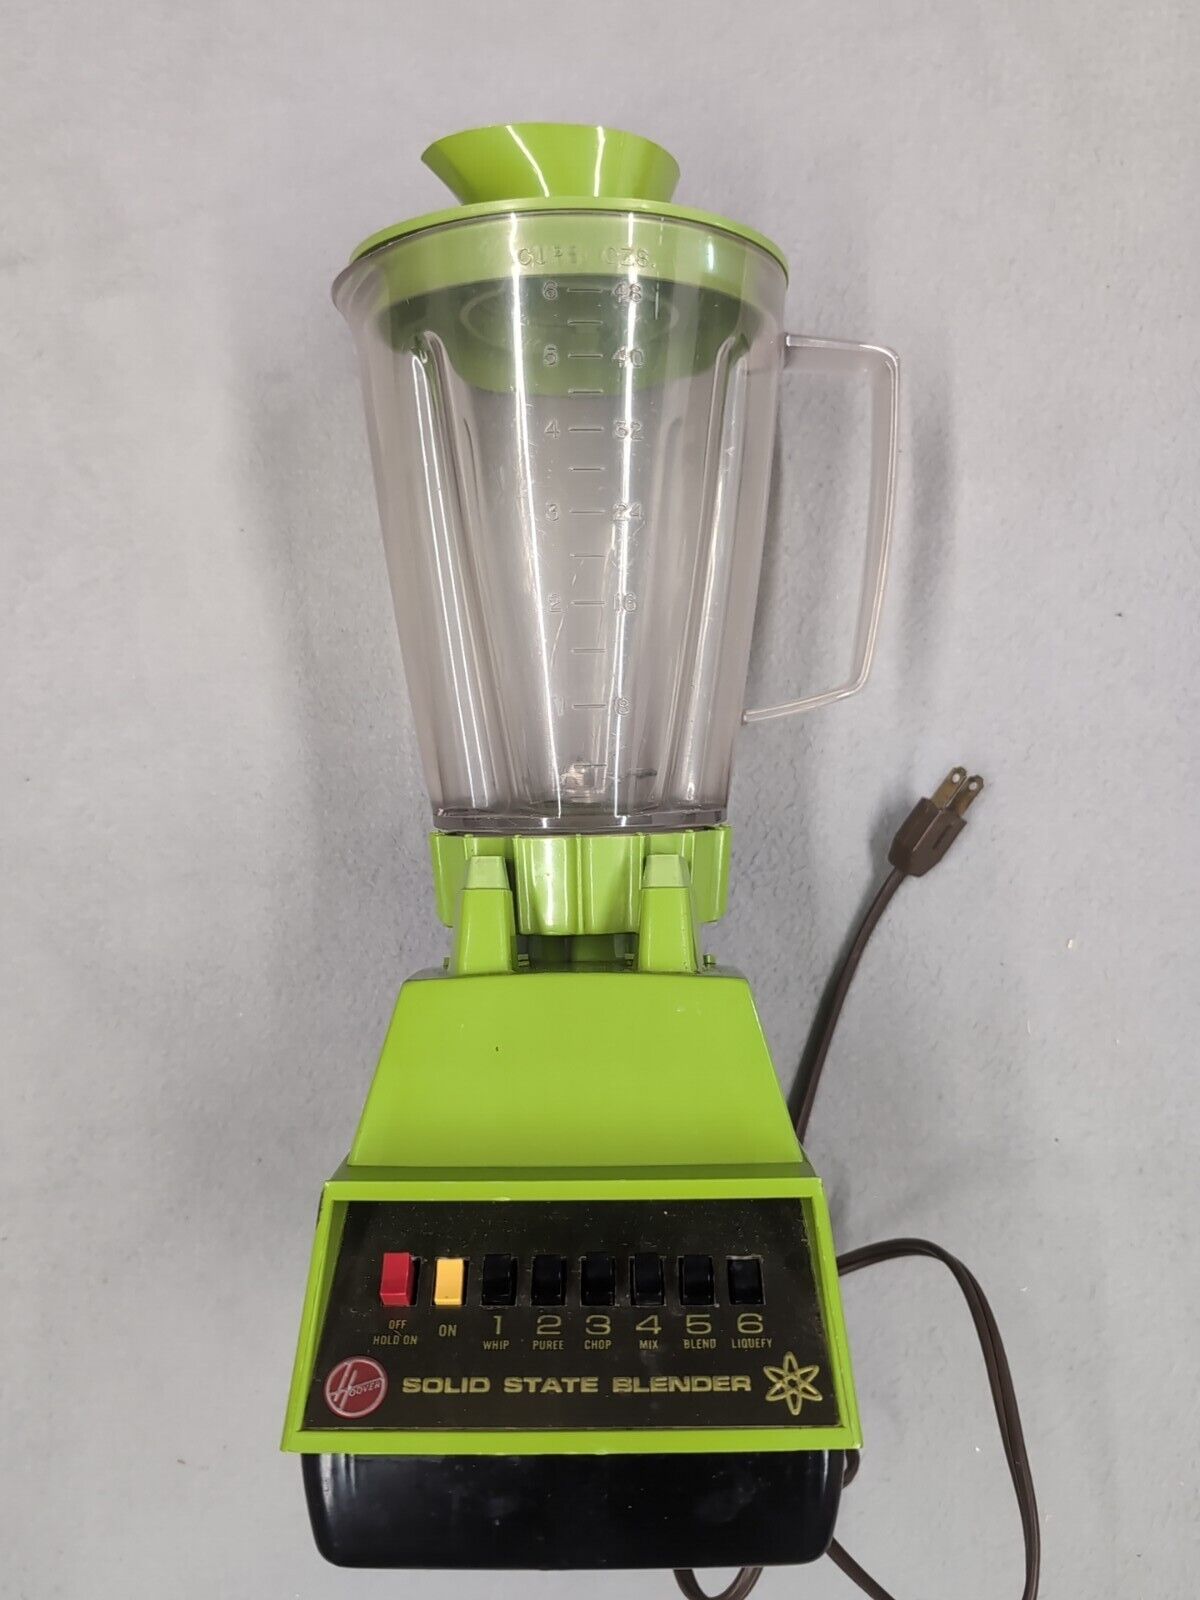 Hoover Blender Solid State Green 6 Speed K6007 Tested Works Vintage 60s